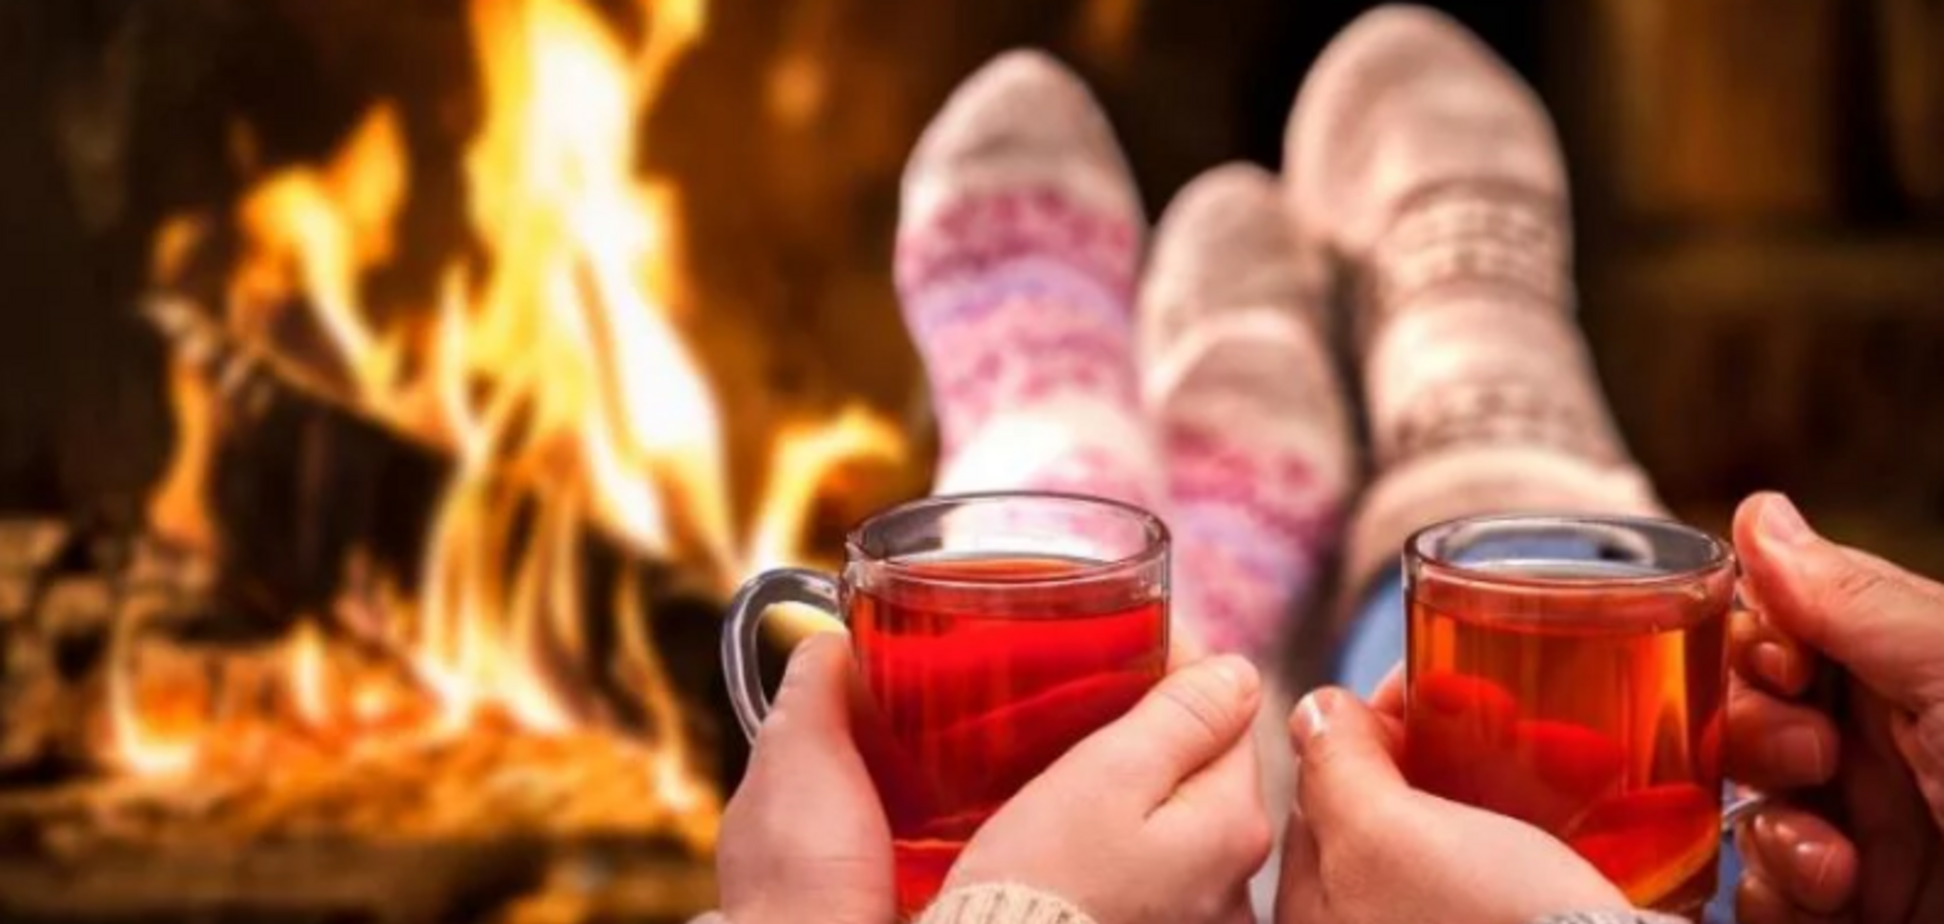 Алкоголь, мокрая голова и шапка: развенчаны главные мифы о том, как согреться зимой